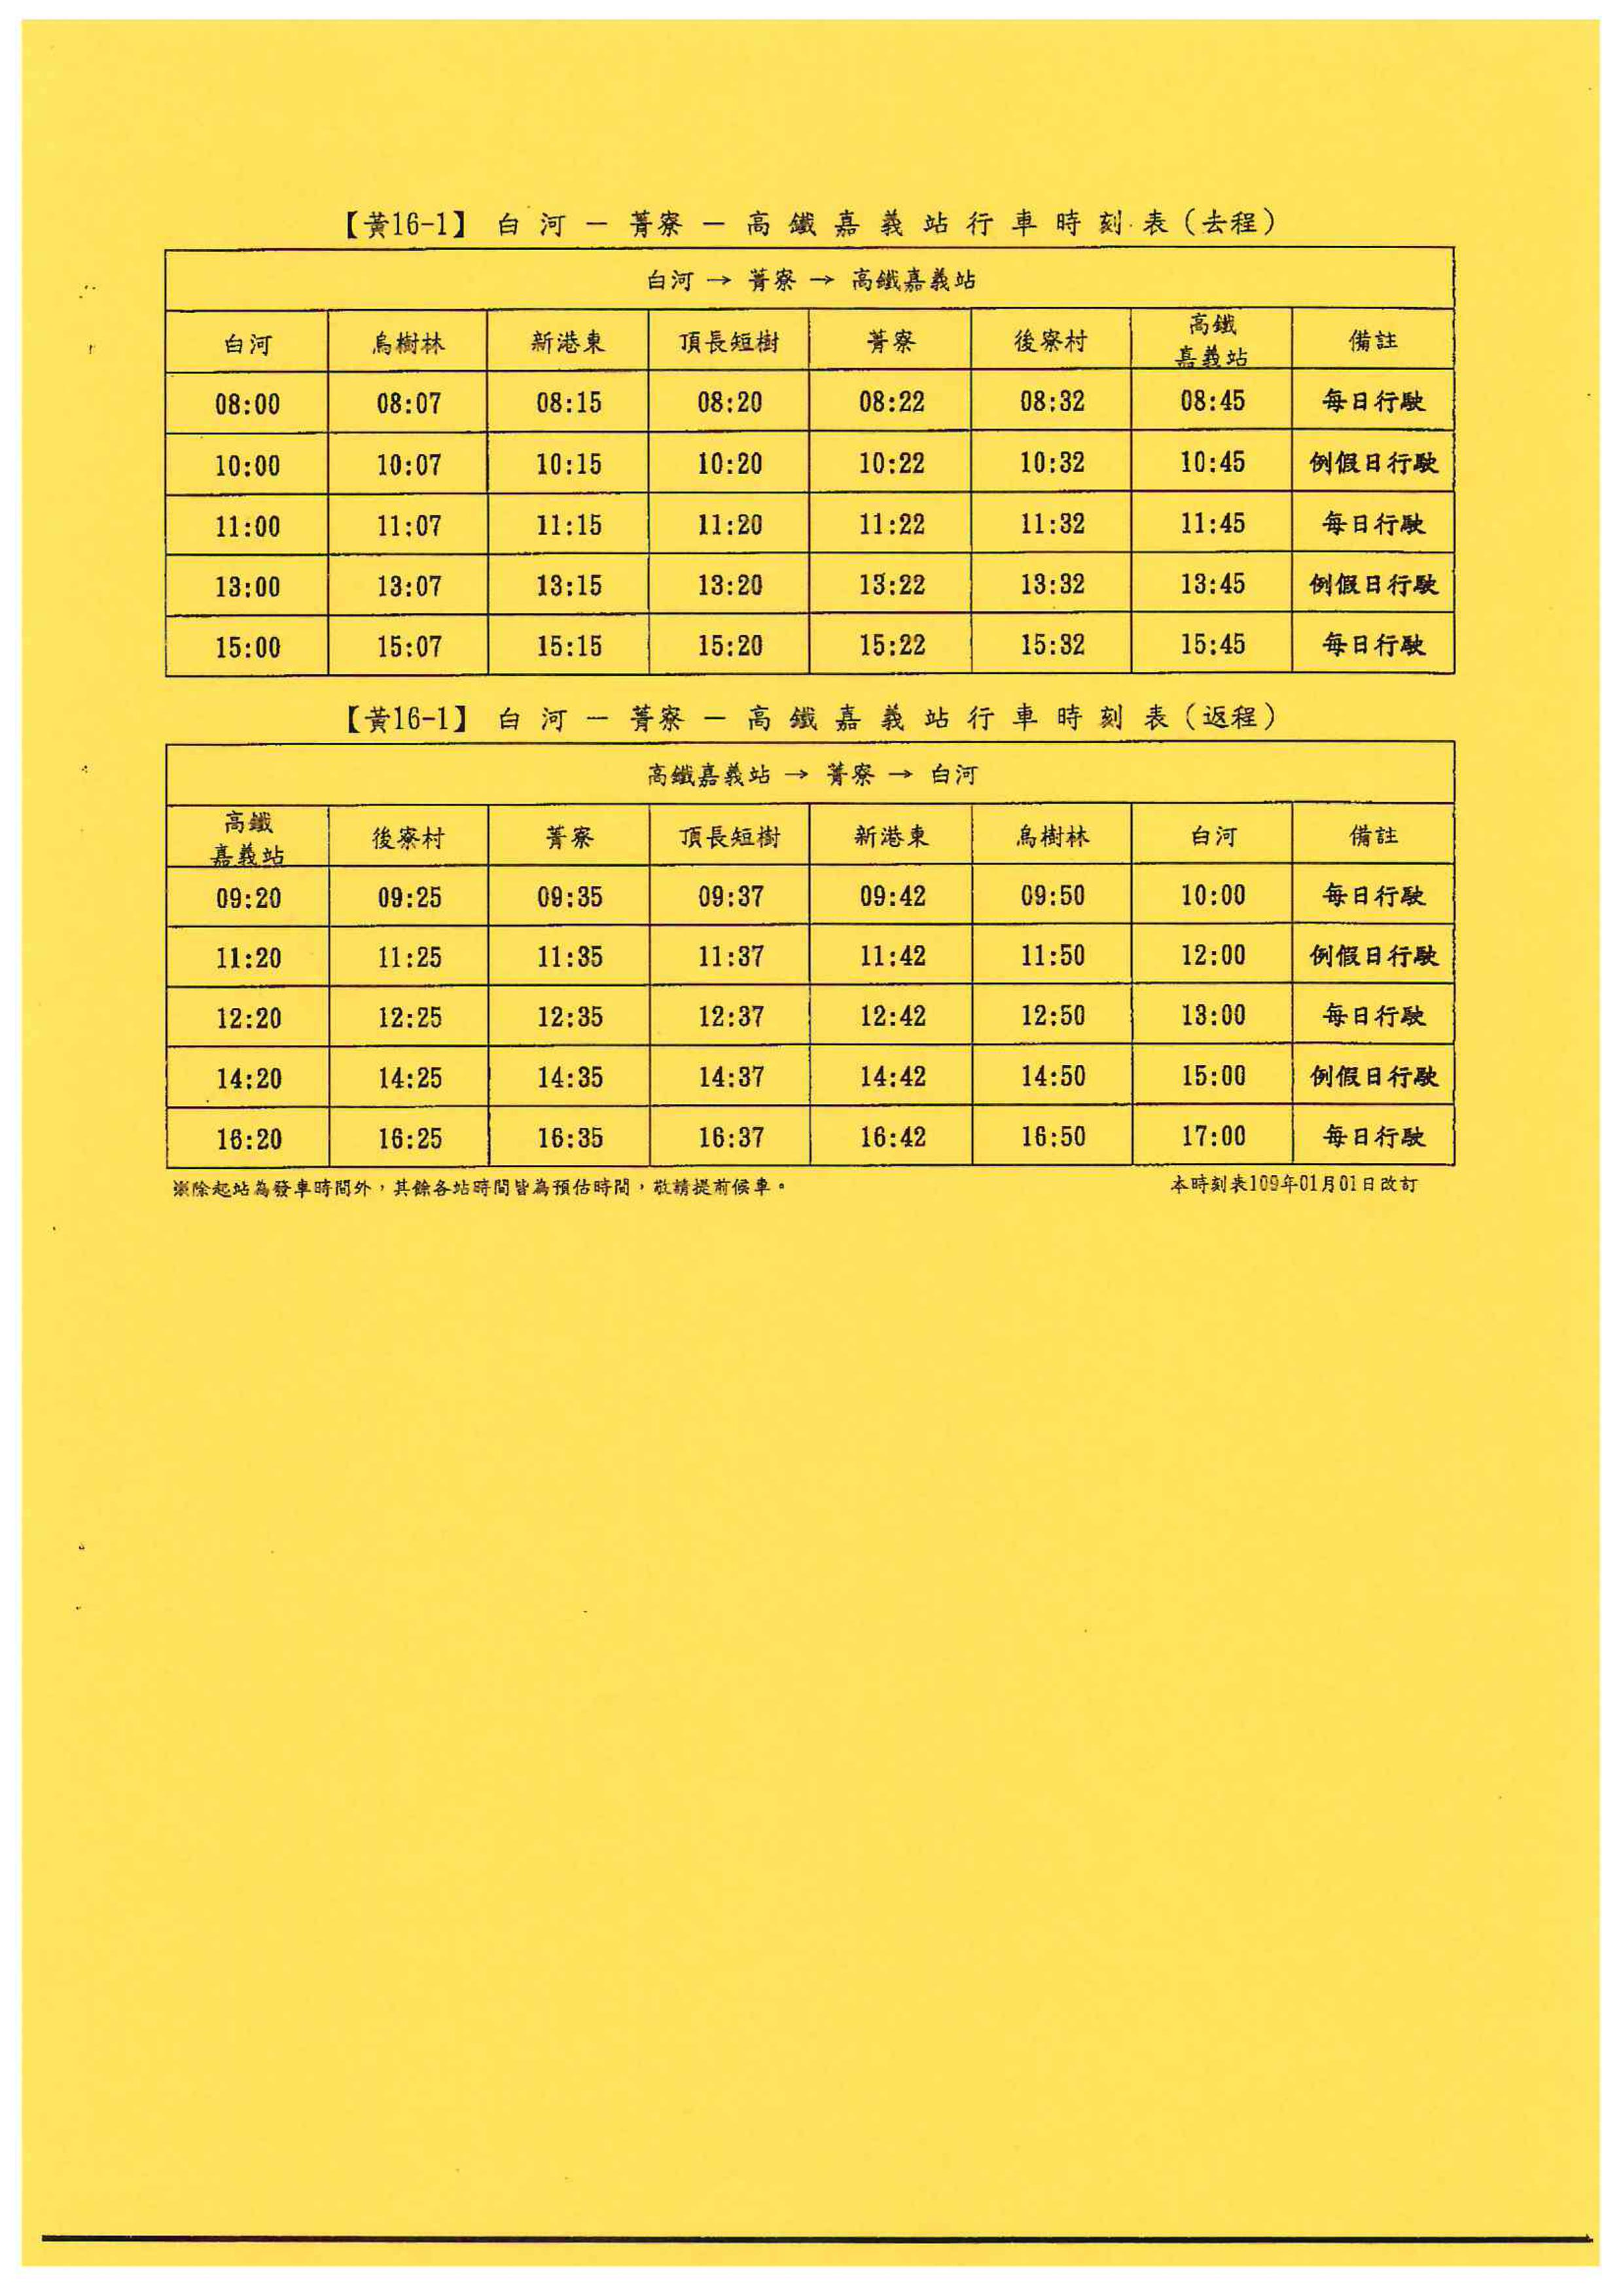 黃16-1公車109年1月1日調整班次時刻表